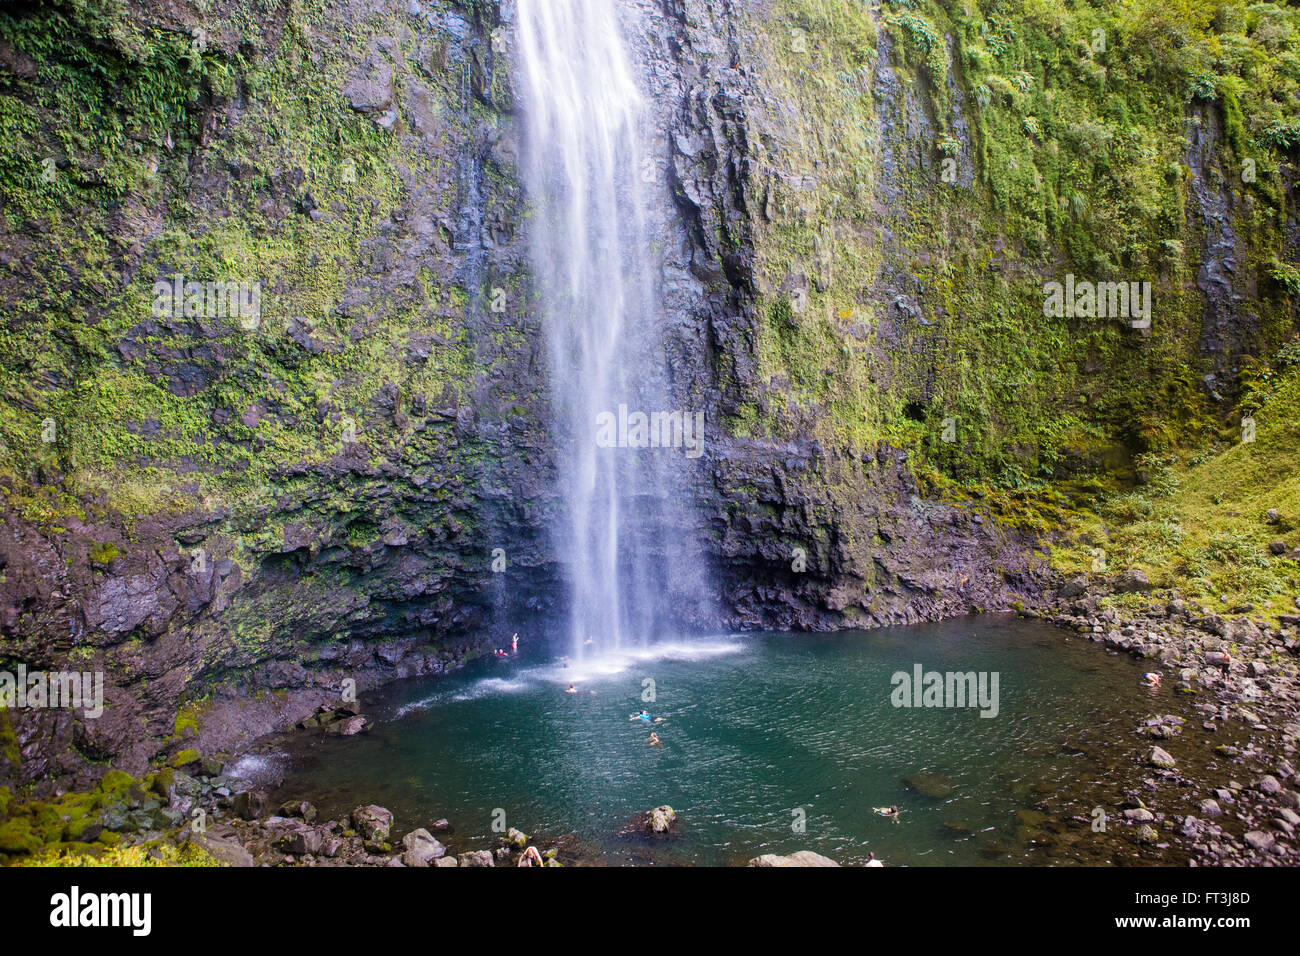 Nuotatori a hanakapiai falls Foto Stock